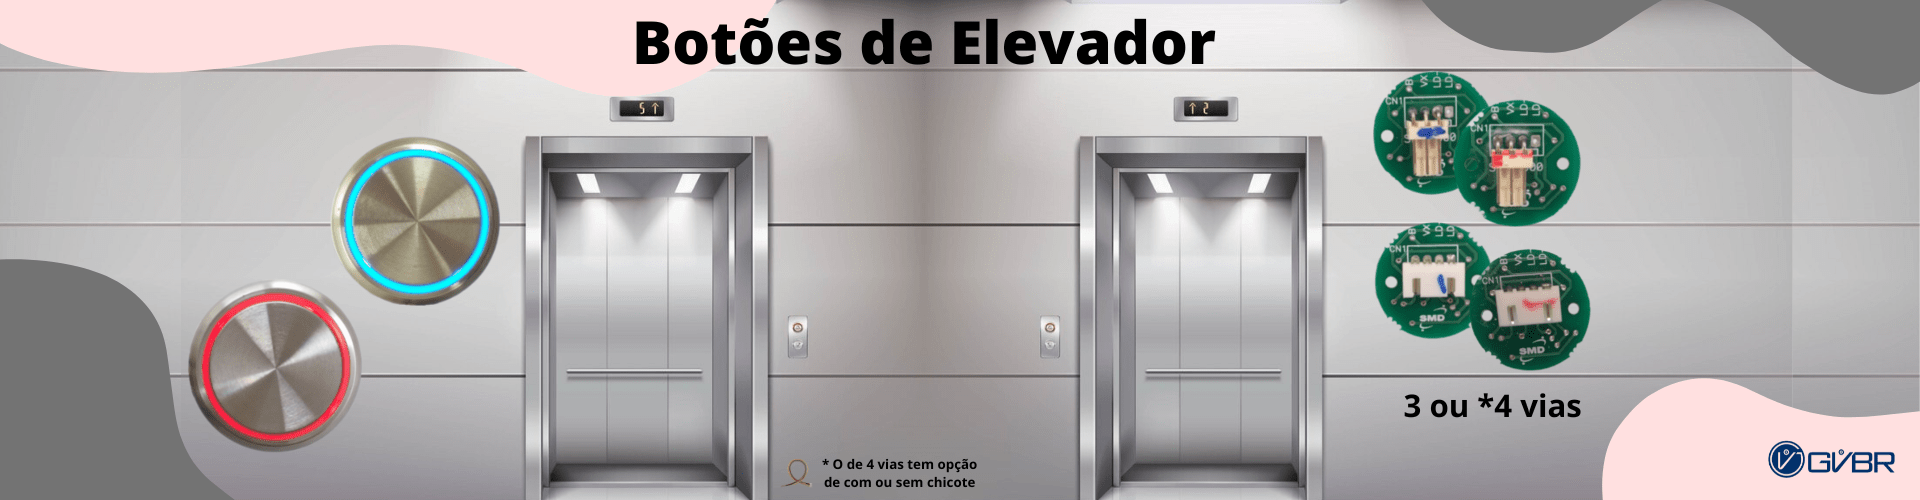 Botão de elevador